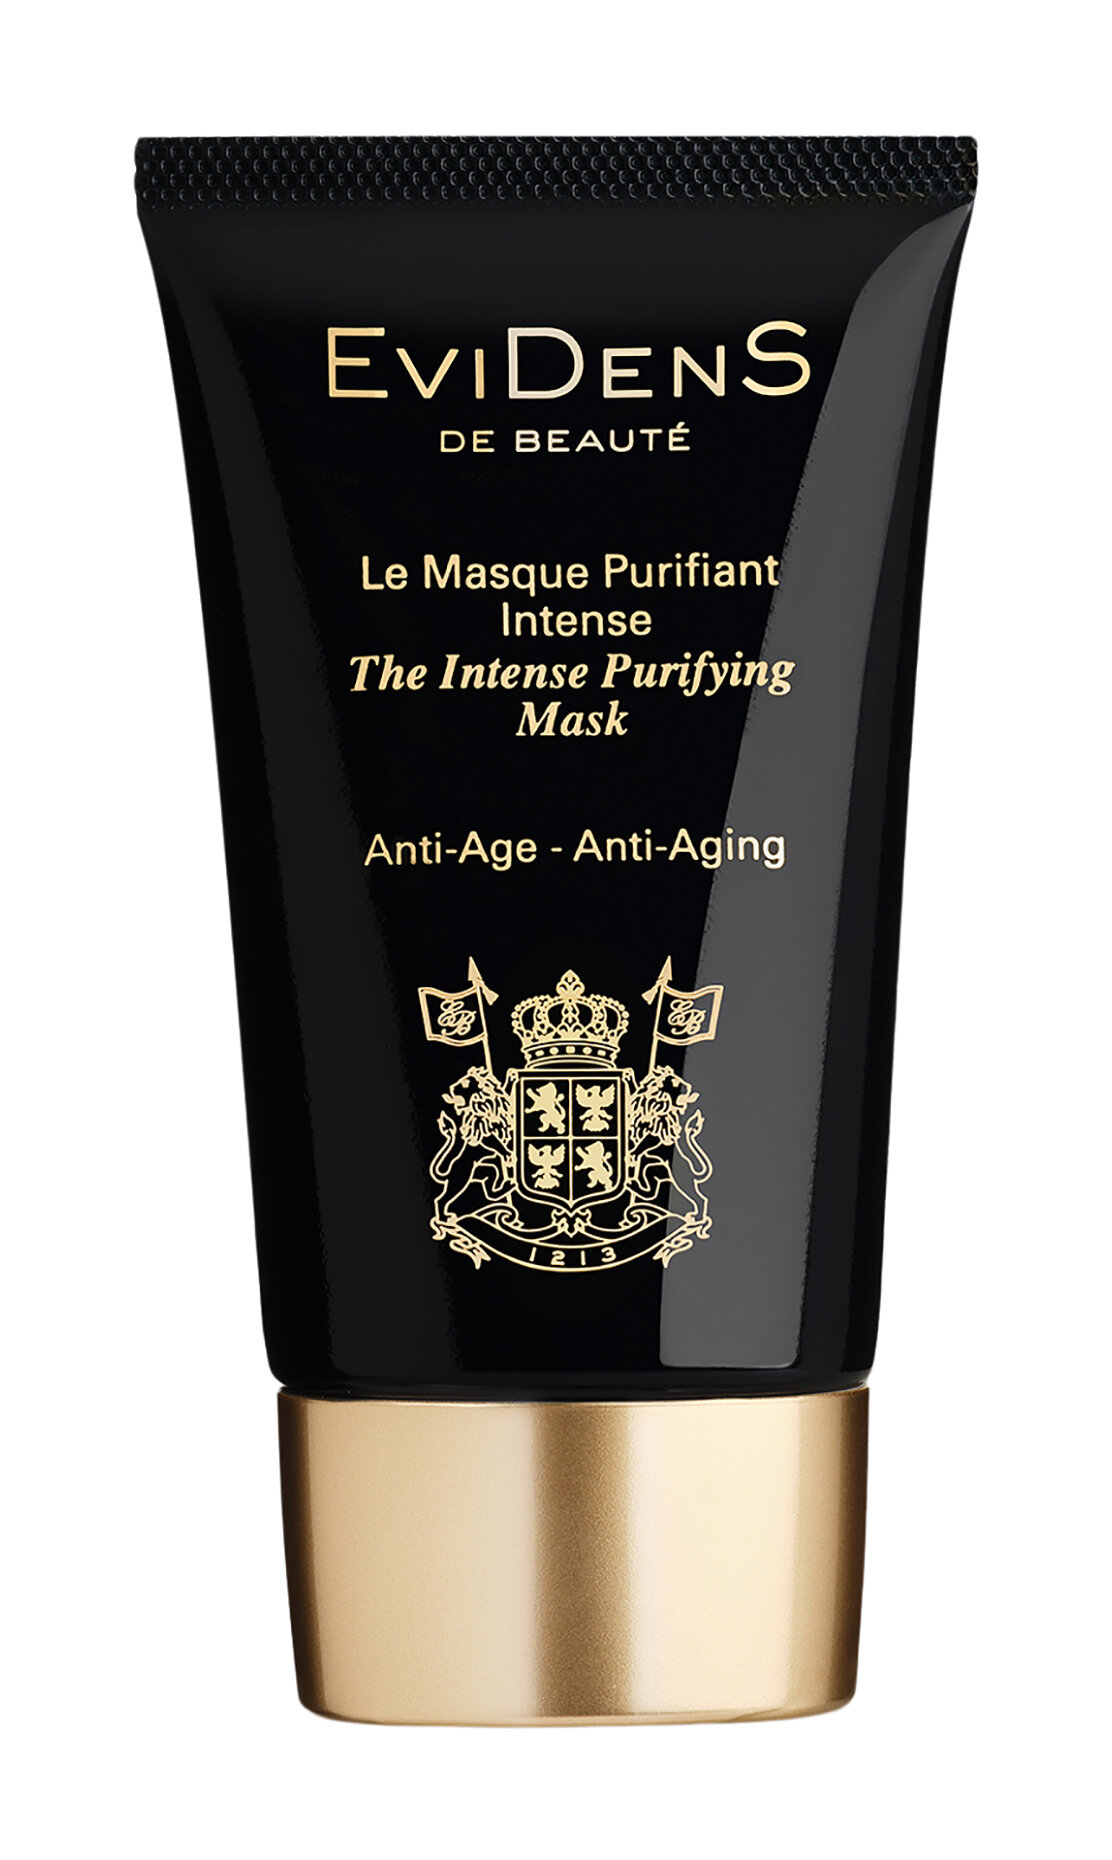 Интенсивная очищающая маска для лица Evidens de Beaute The Intense Purifying Mask 55 мл .